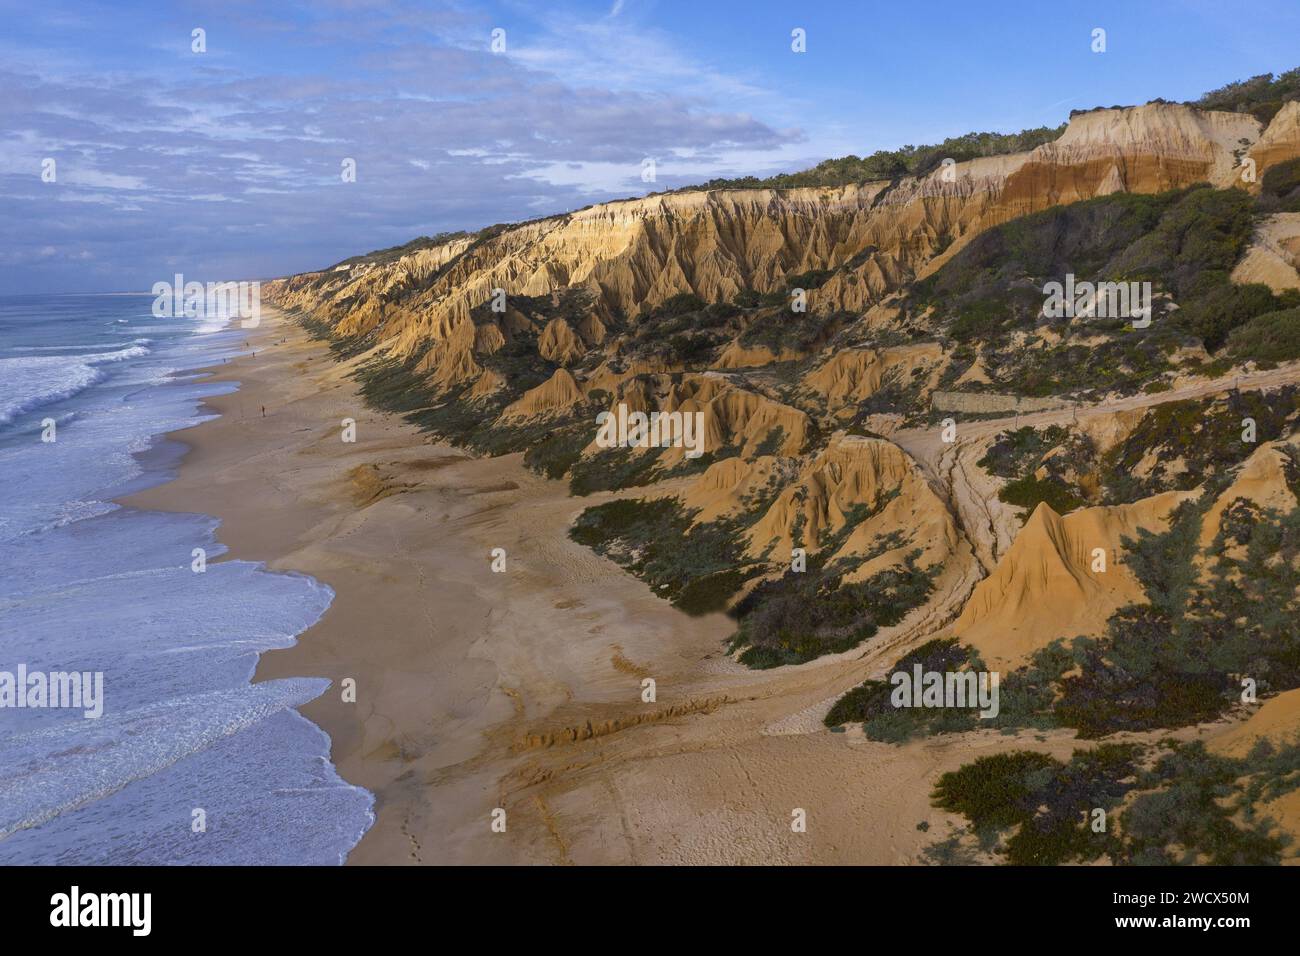 Portugal, Alentejo, plage de Gale Fontainhas, vue aérienne de falaises fossiles d'ocre aux formes érodées surplombant une longue plage face à l'océan Atlantique Banque D'Images